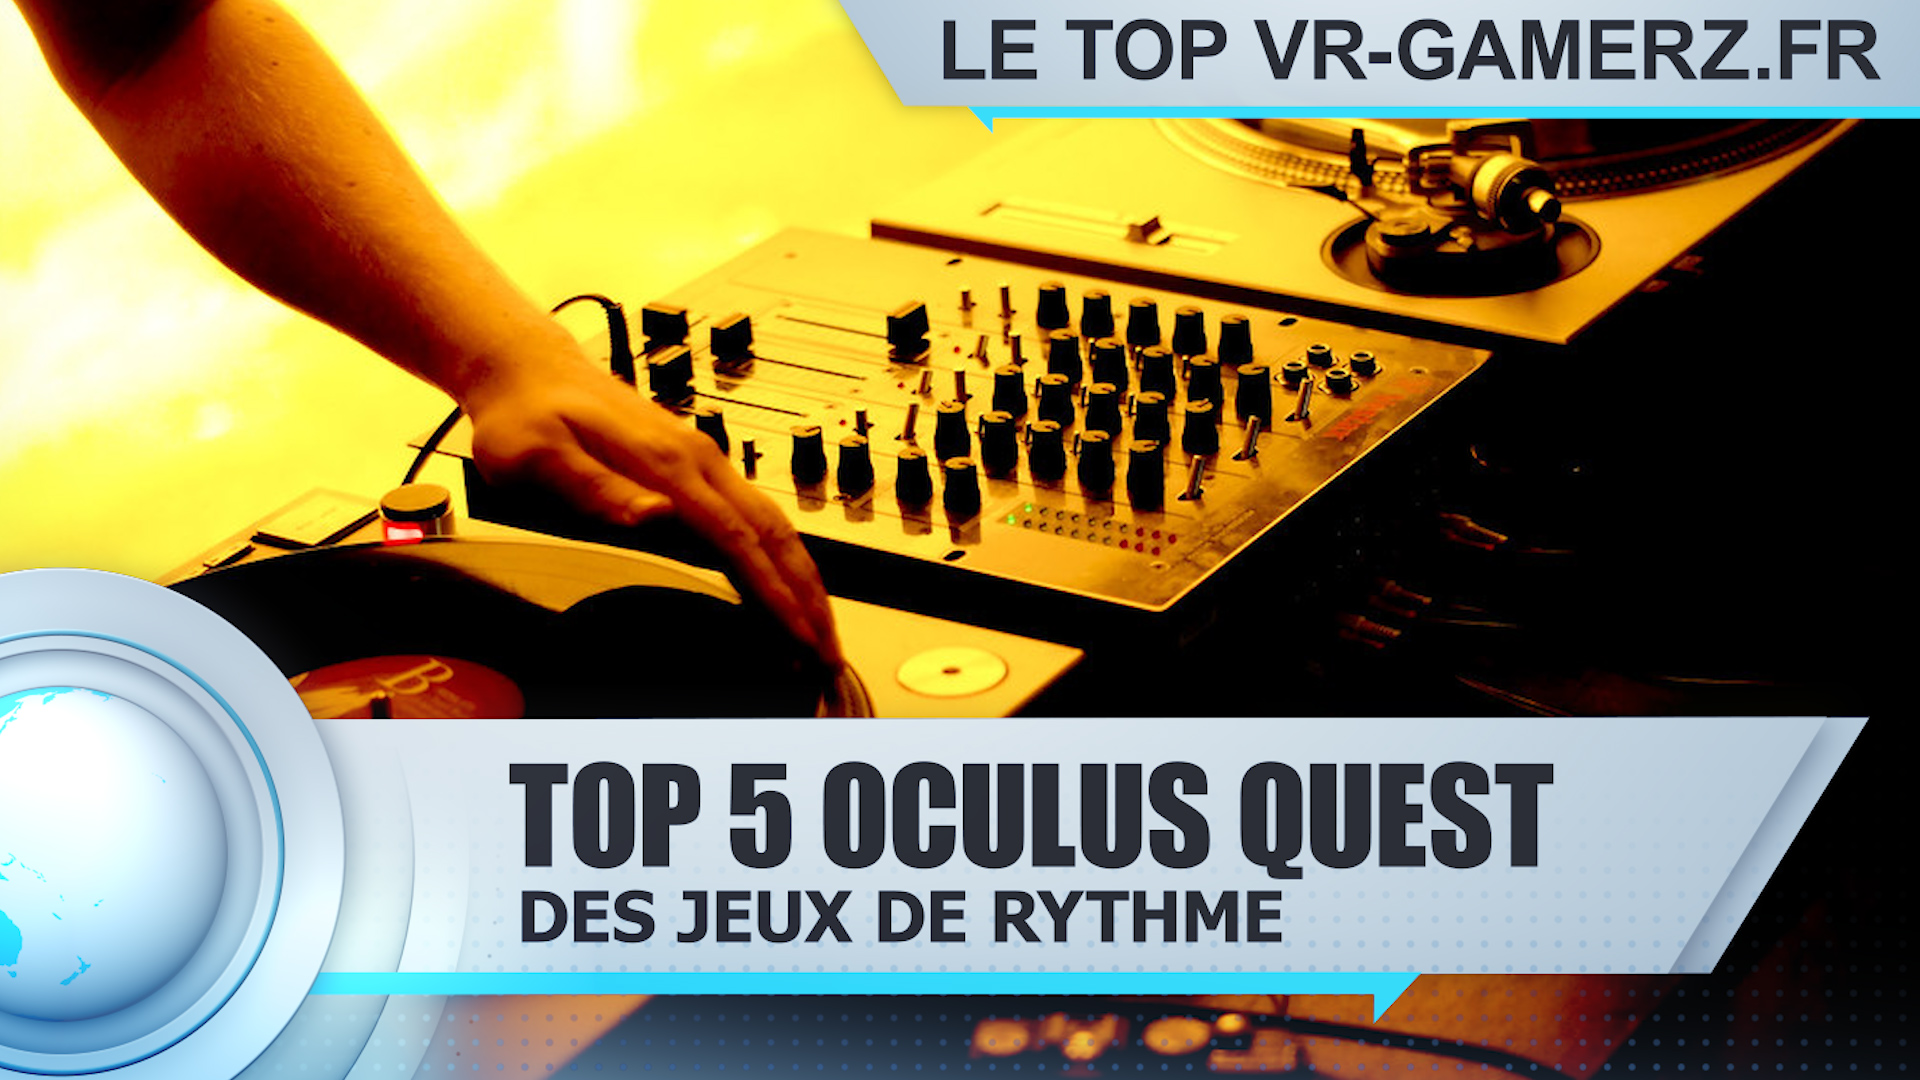 Top 5 des jeux de rythme sur Oculus quest